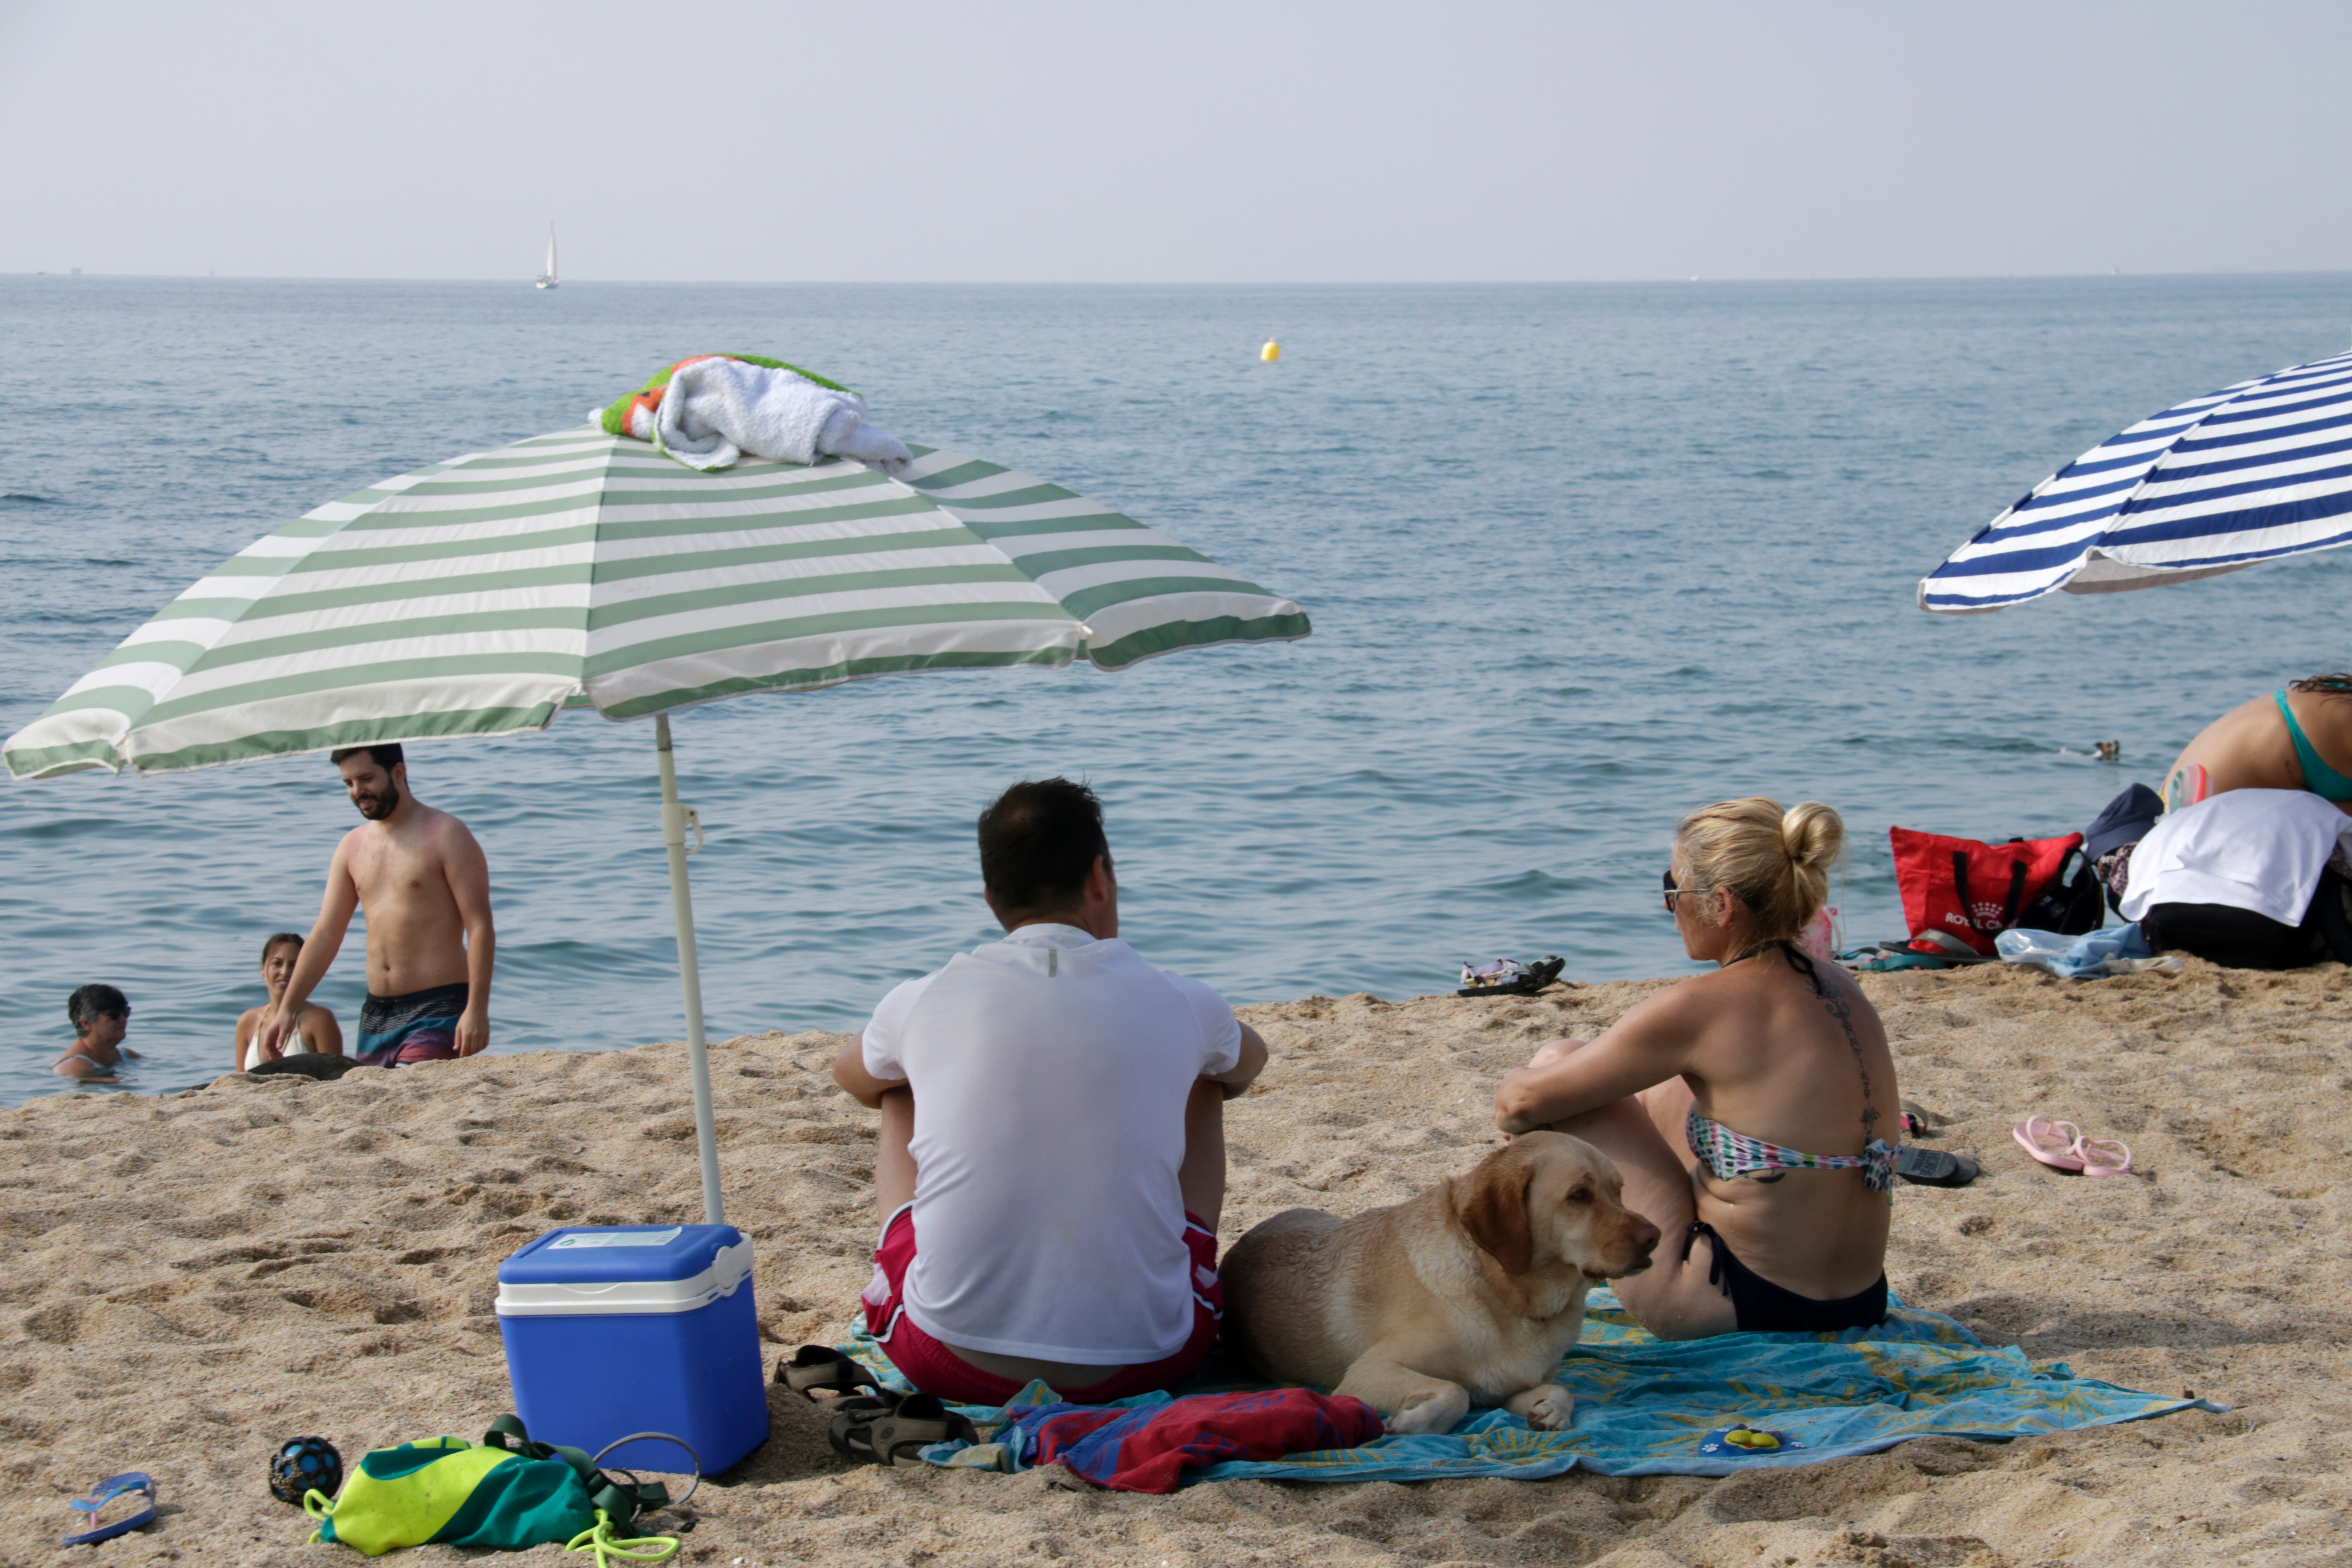 The dog friendly beach in Mataró